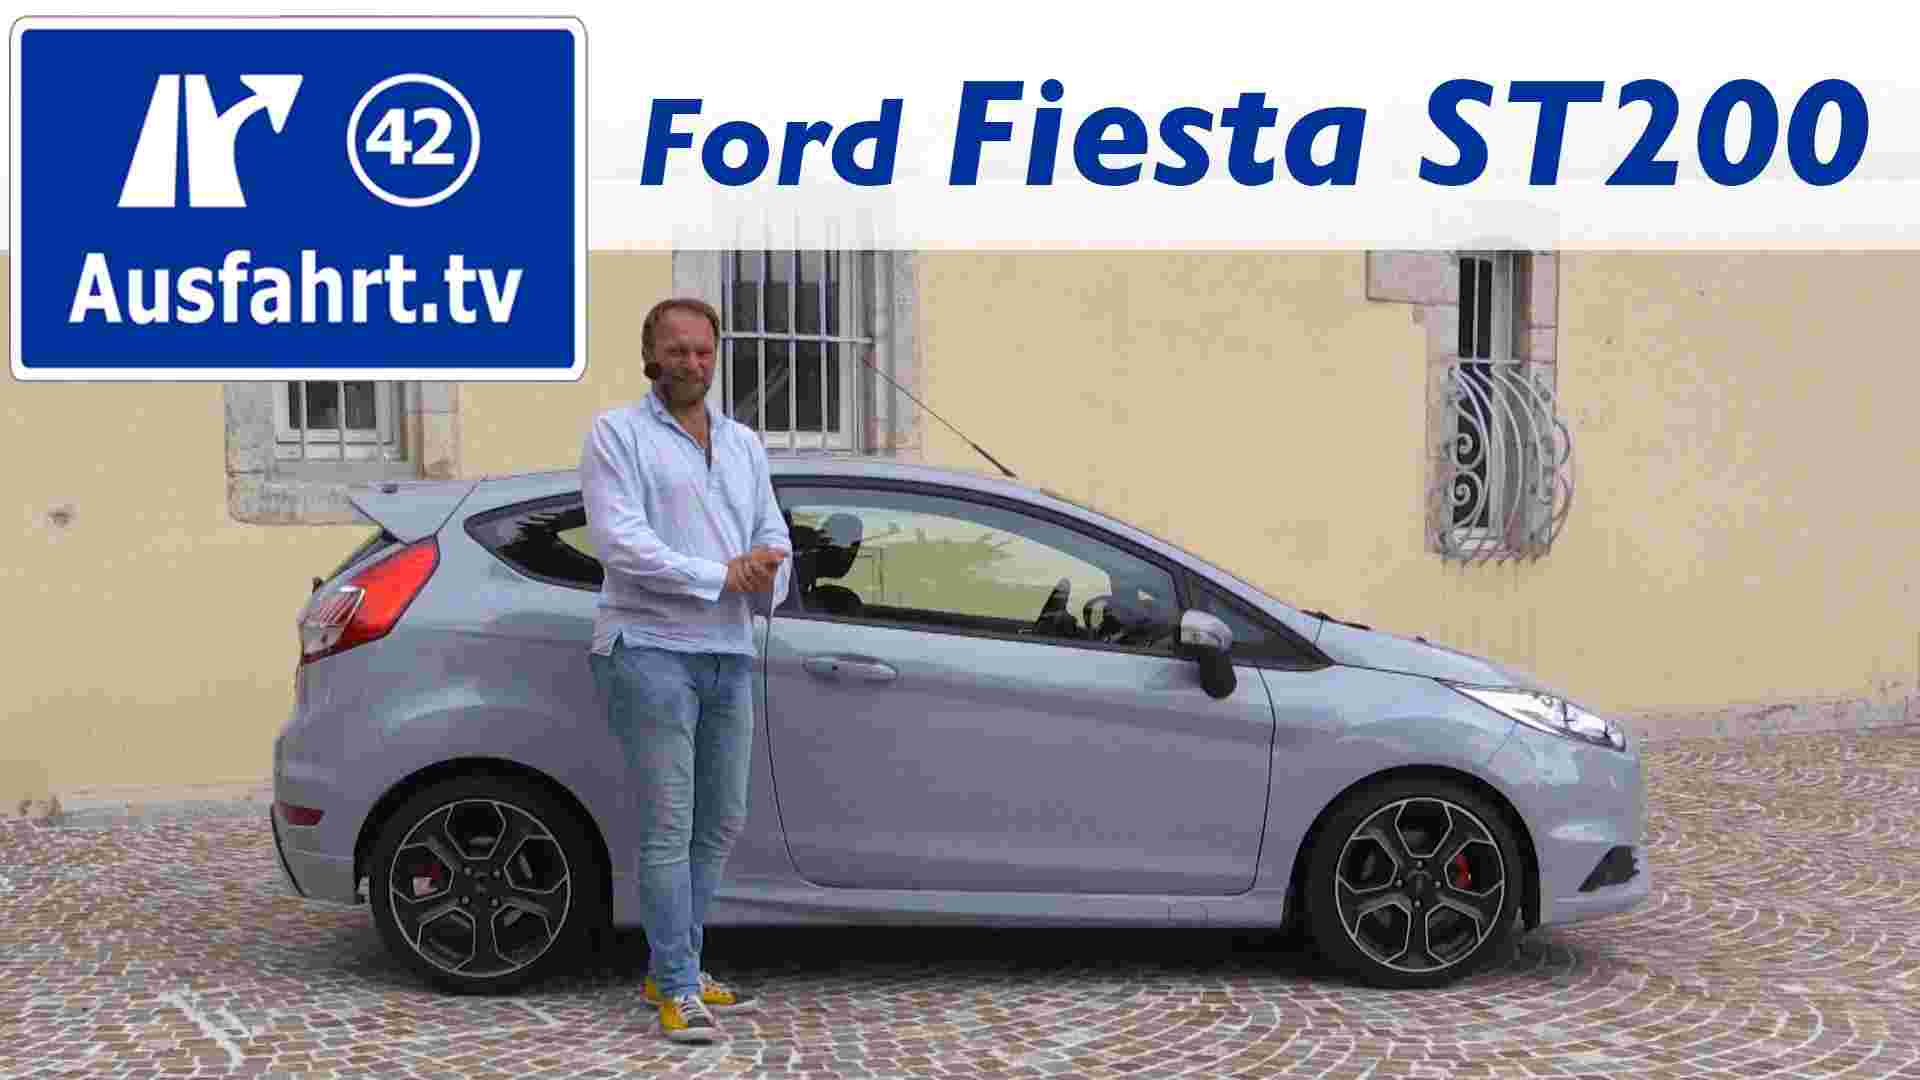 2016 Ford Fiesta ST200 - Fahrbericht der Probefahrt, Test, Review Ausfahrt.tv